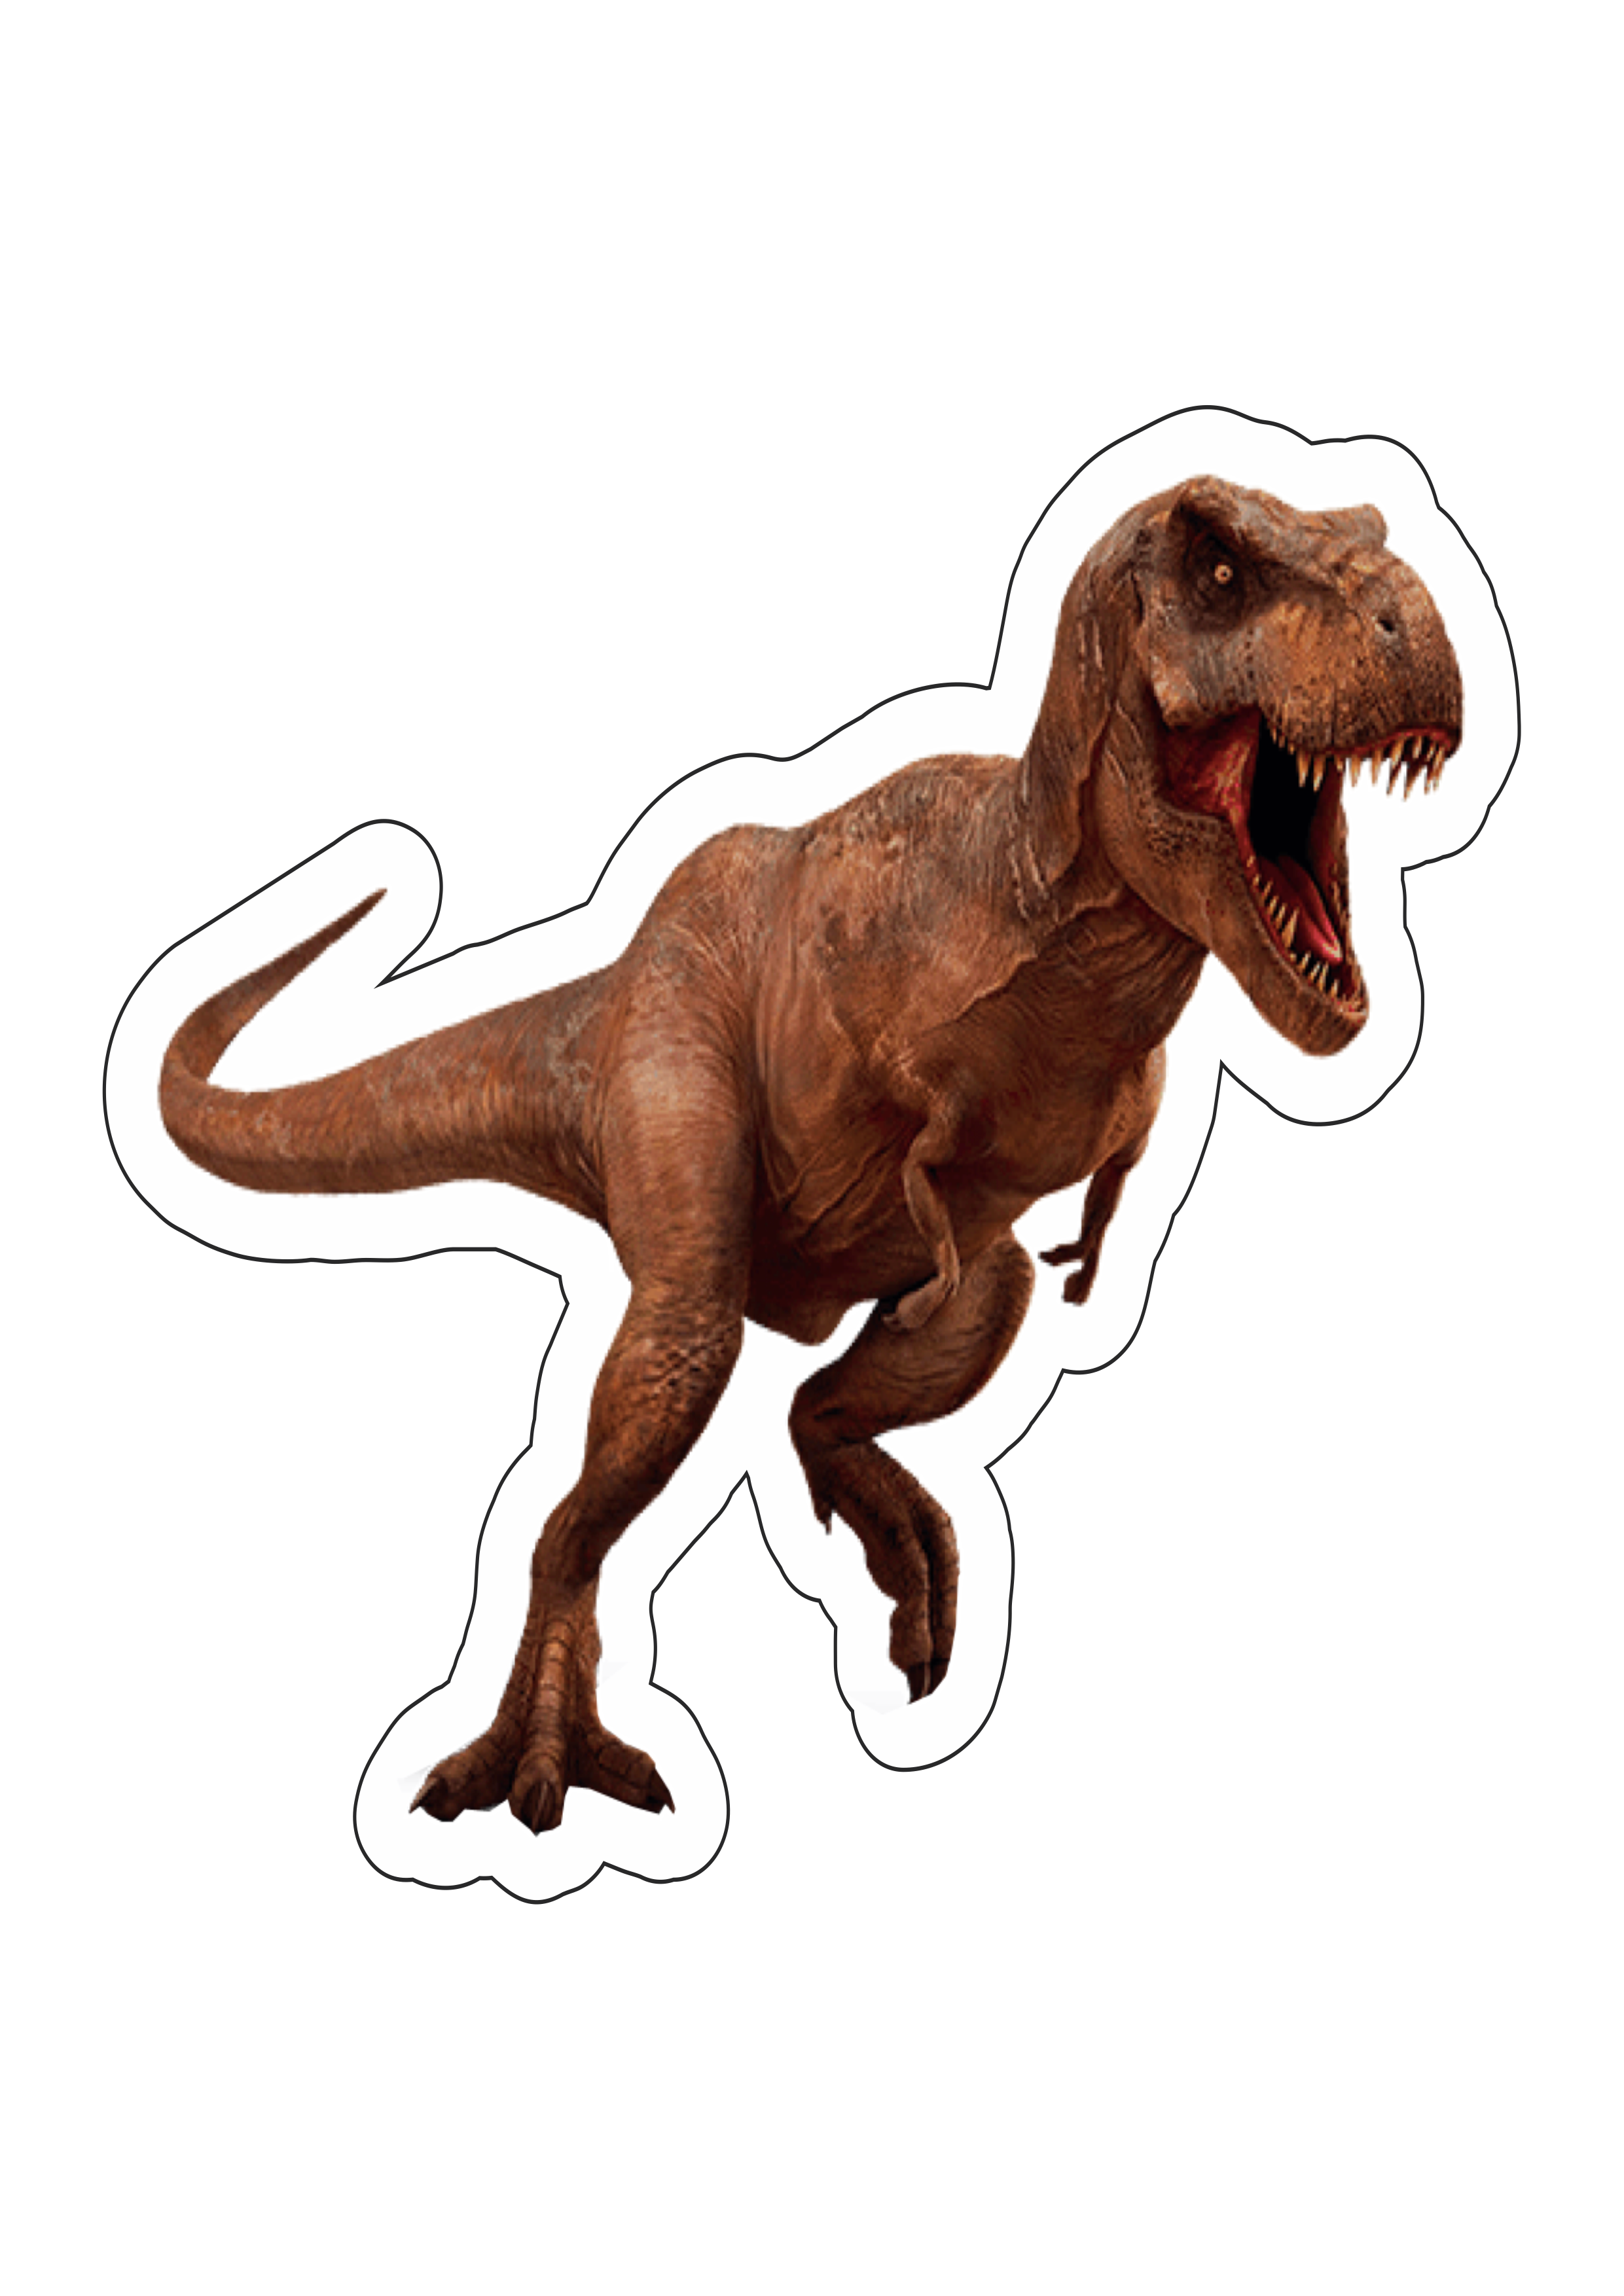 Jurassic Park tiranossauro rex imagem sem fundo idade da pedra brinquedo  toy pack de imagens realista png